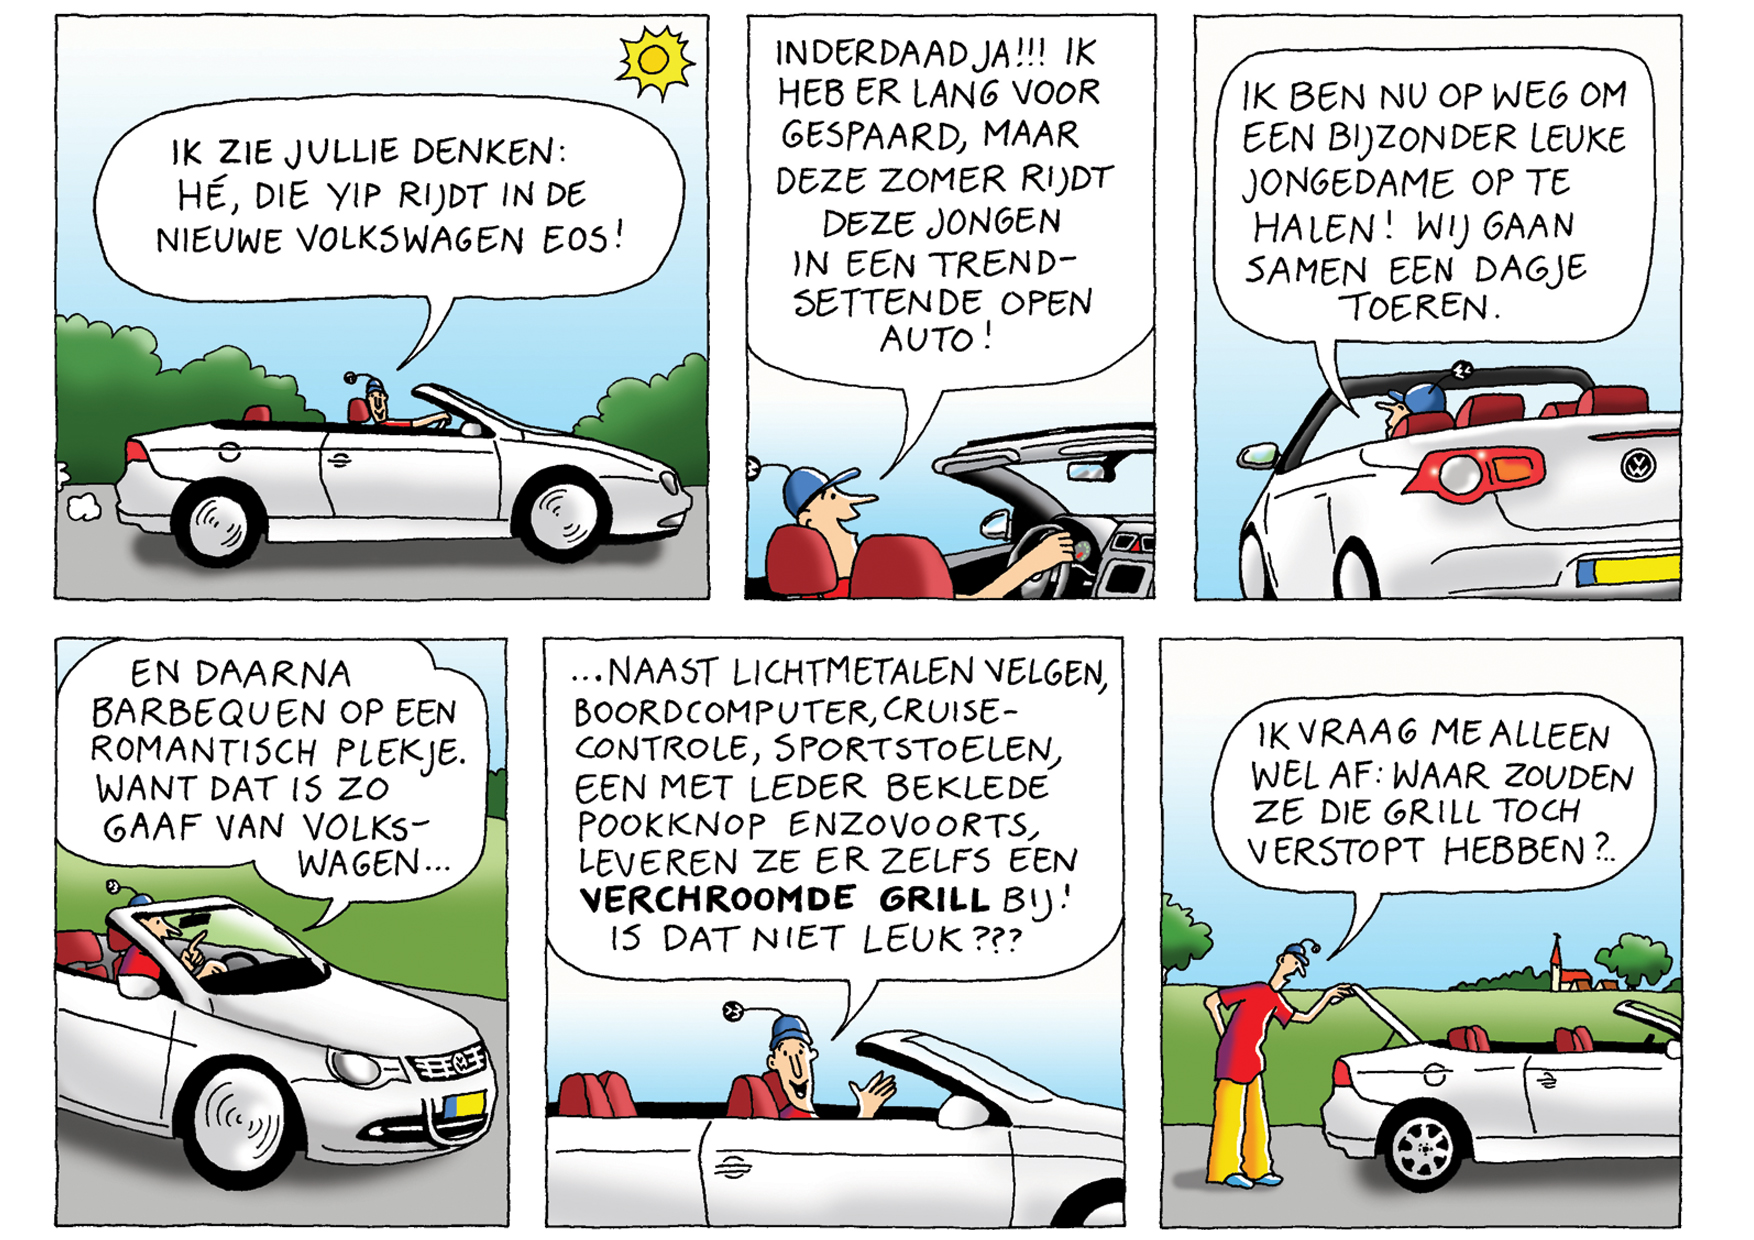 Volkswagen Nederland